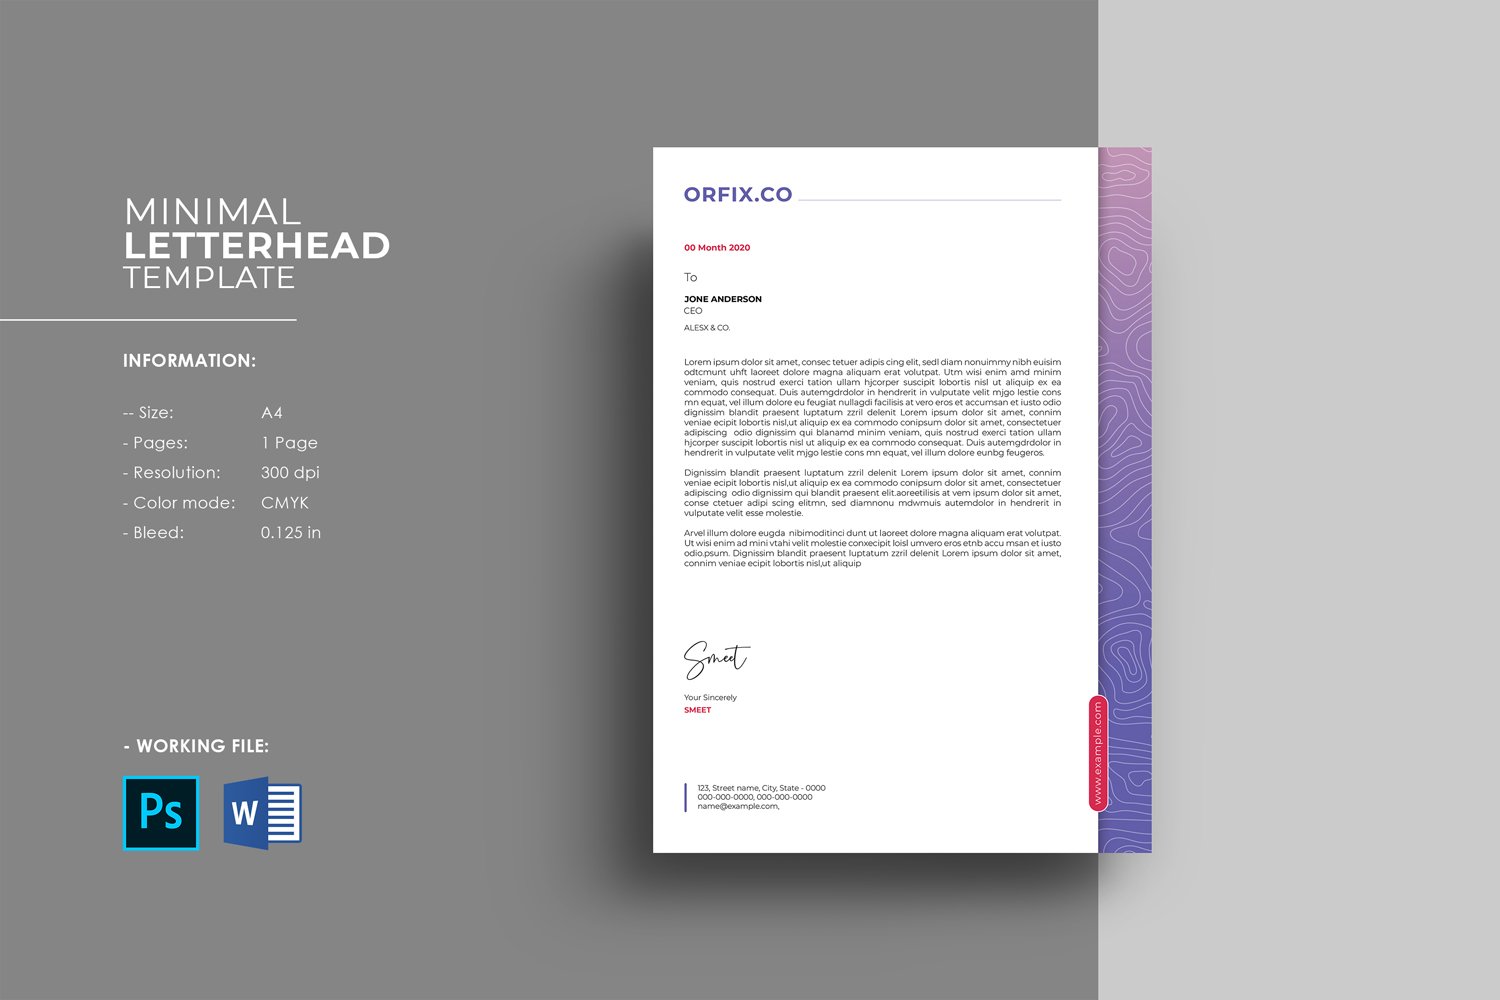 Letterhead A4 Template, Word & Psd